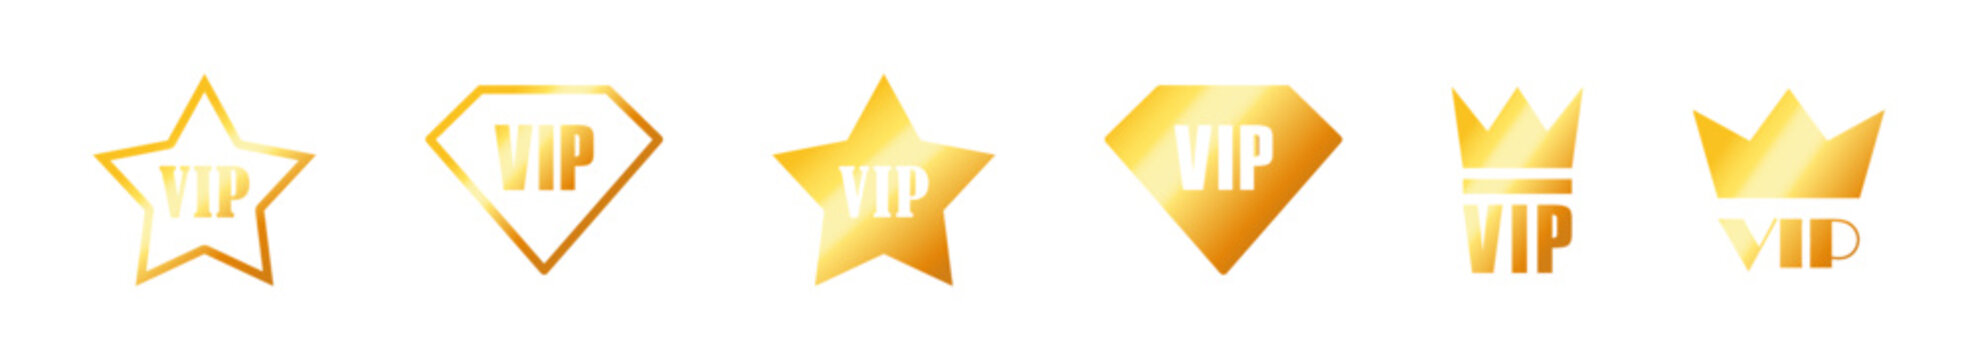 VIP label or tag golden design badge. Vector illustration.